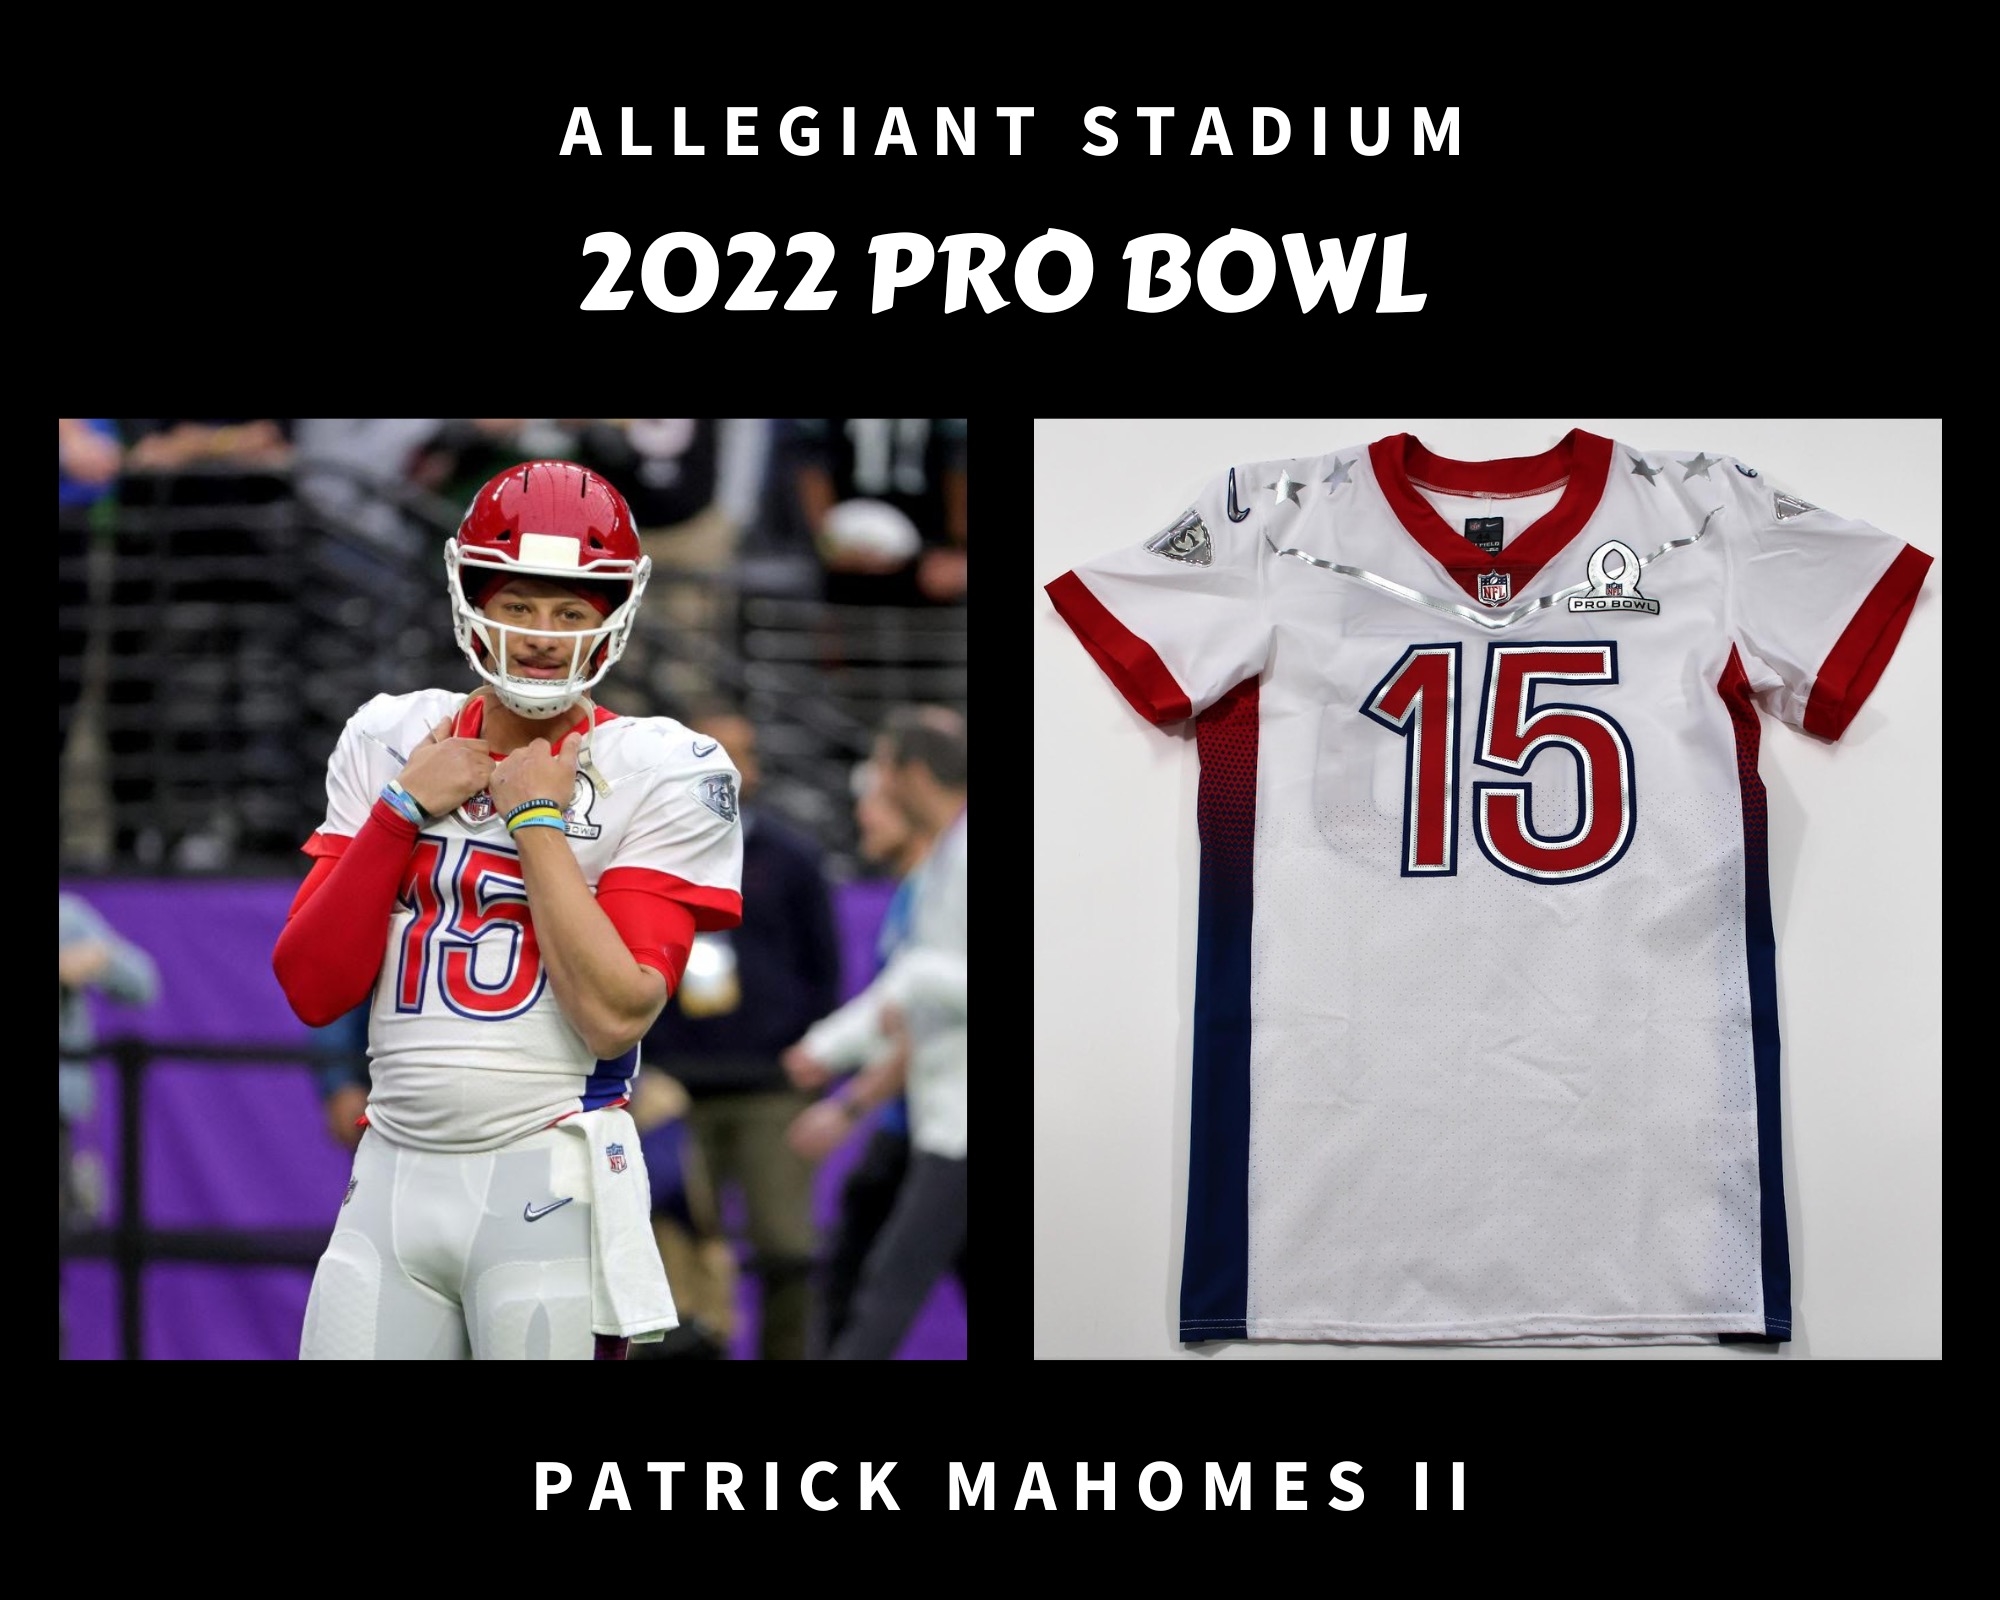 2022 pro bowl uniforms